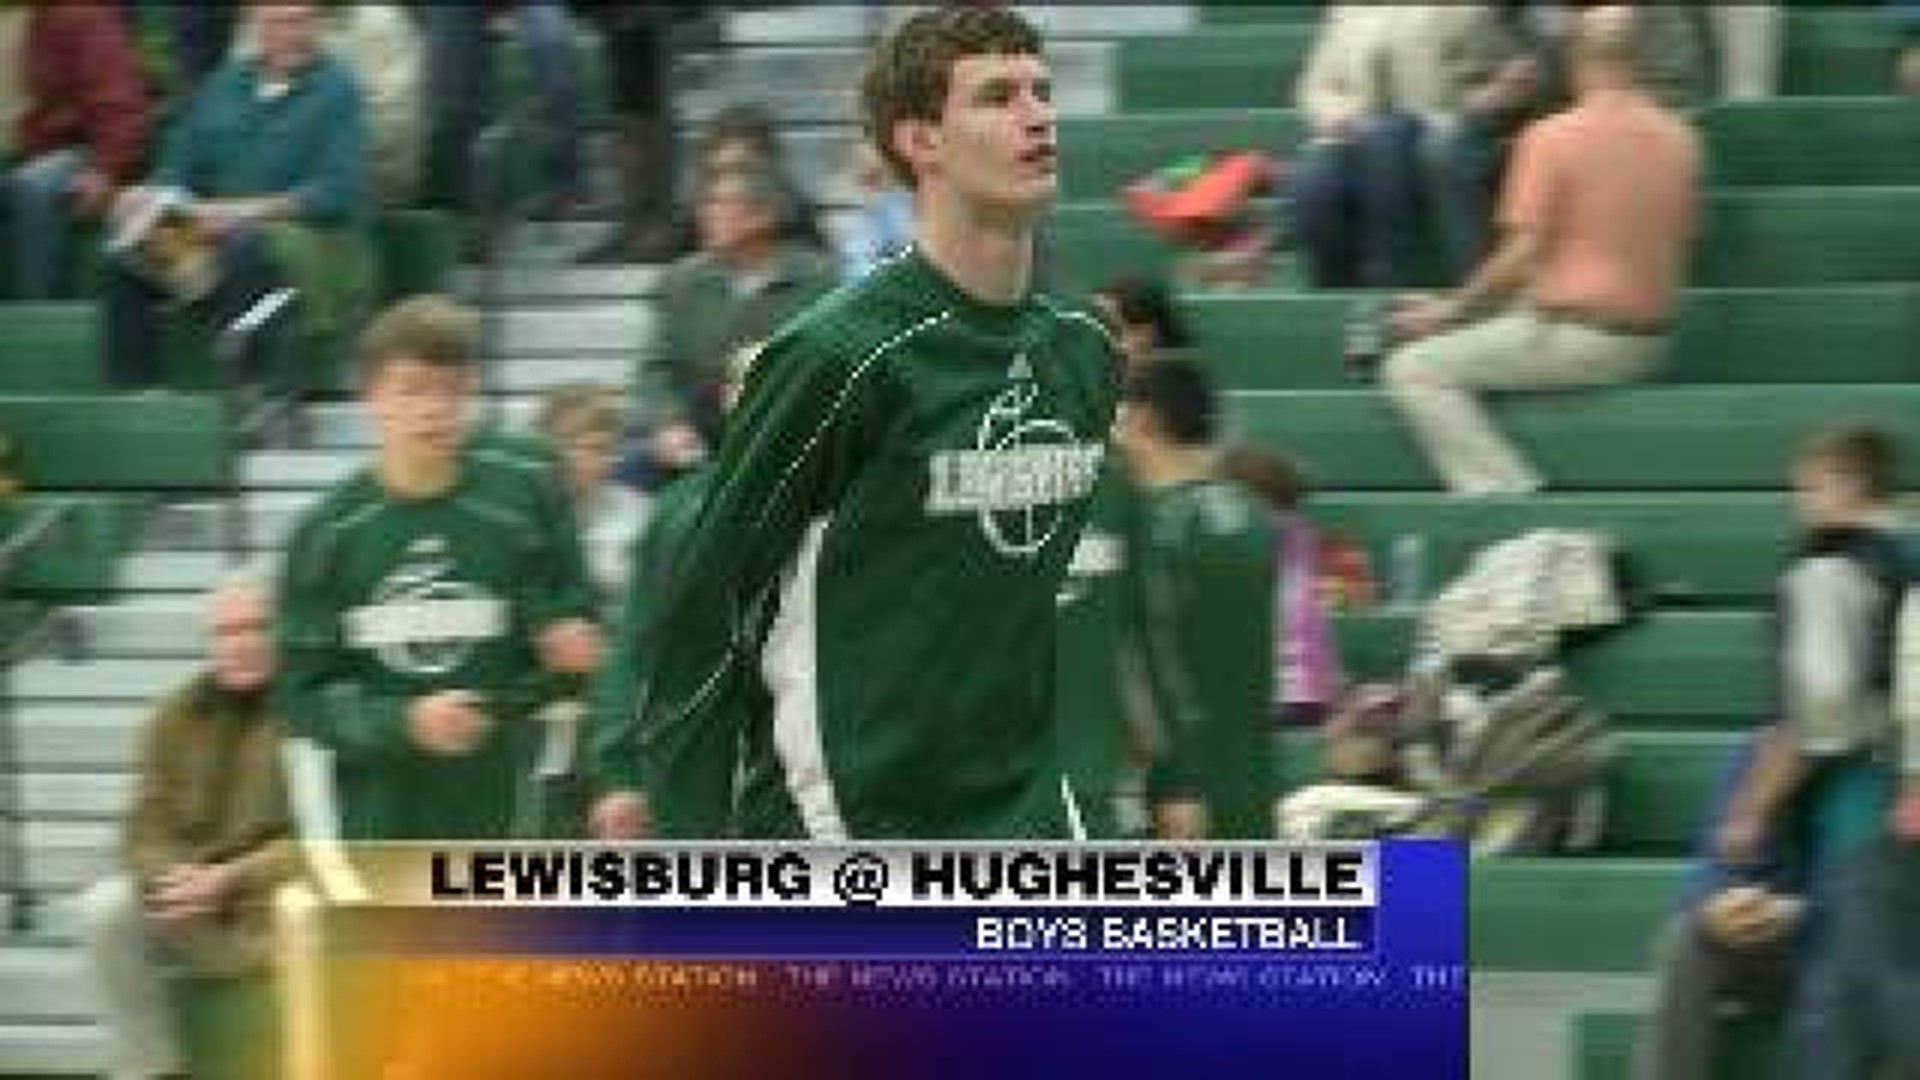 Hughesville vs Lewisburg Basketball